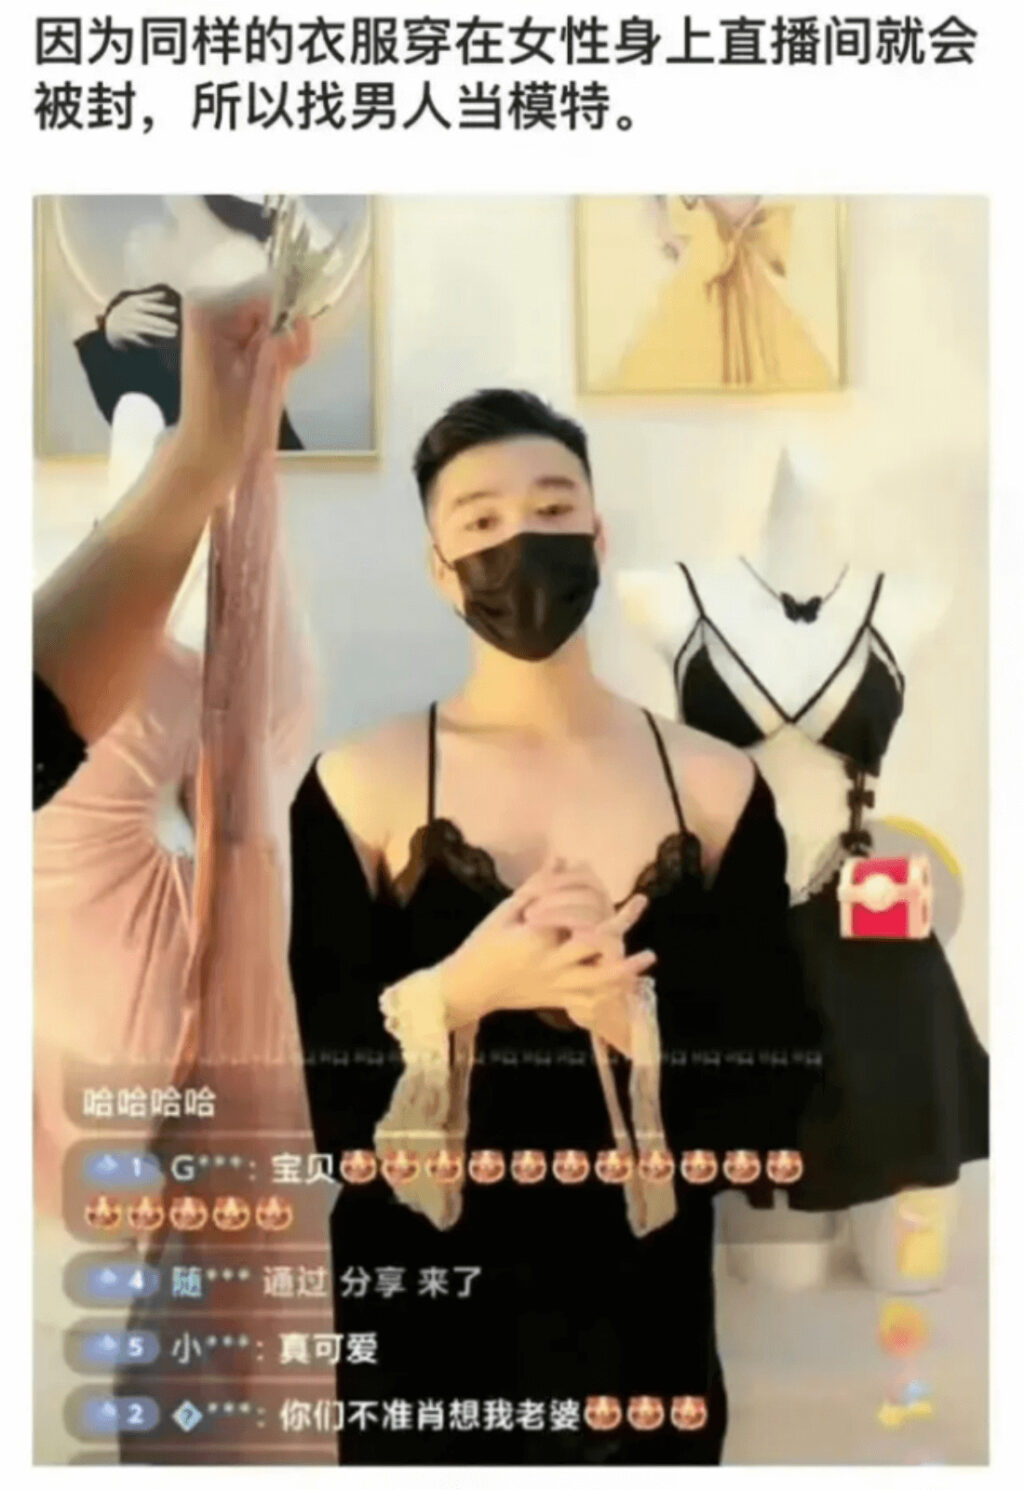 中国でイケメンが女性用下着を着用したライブコマース急増